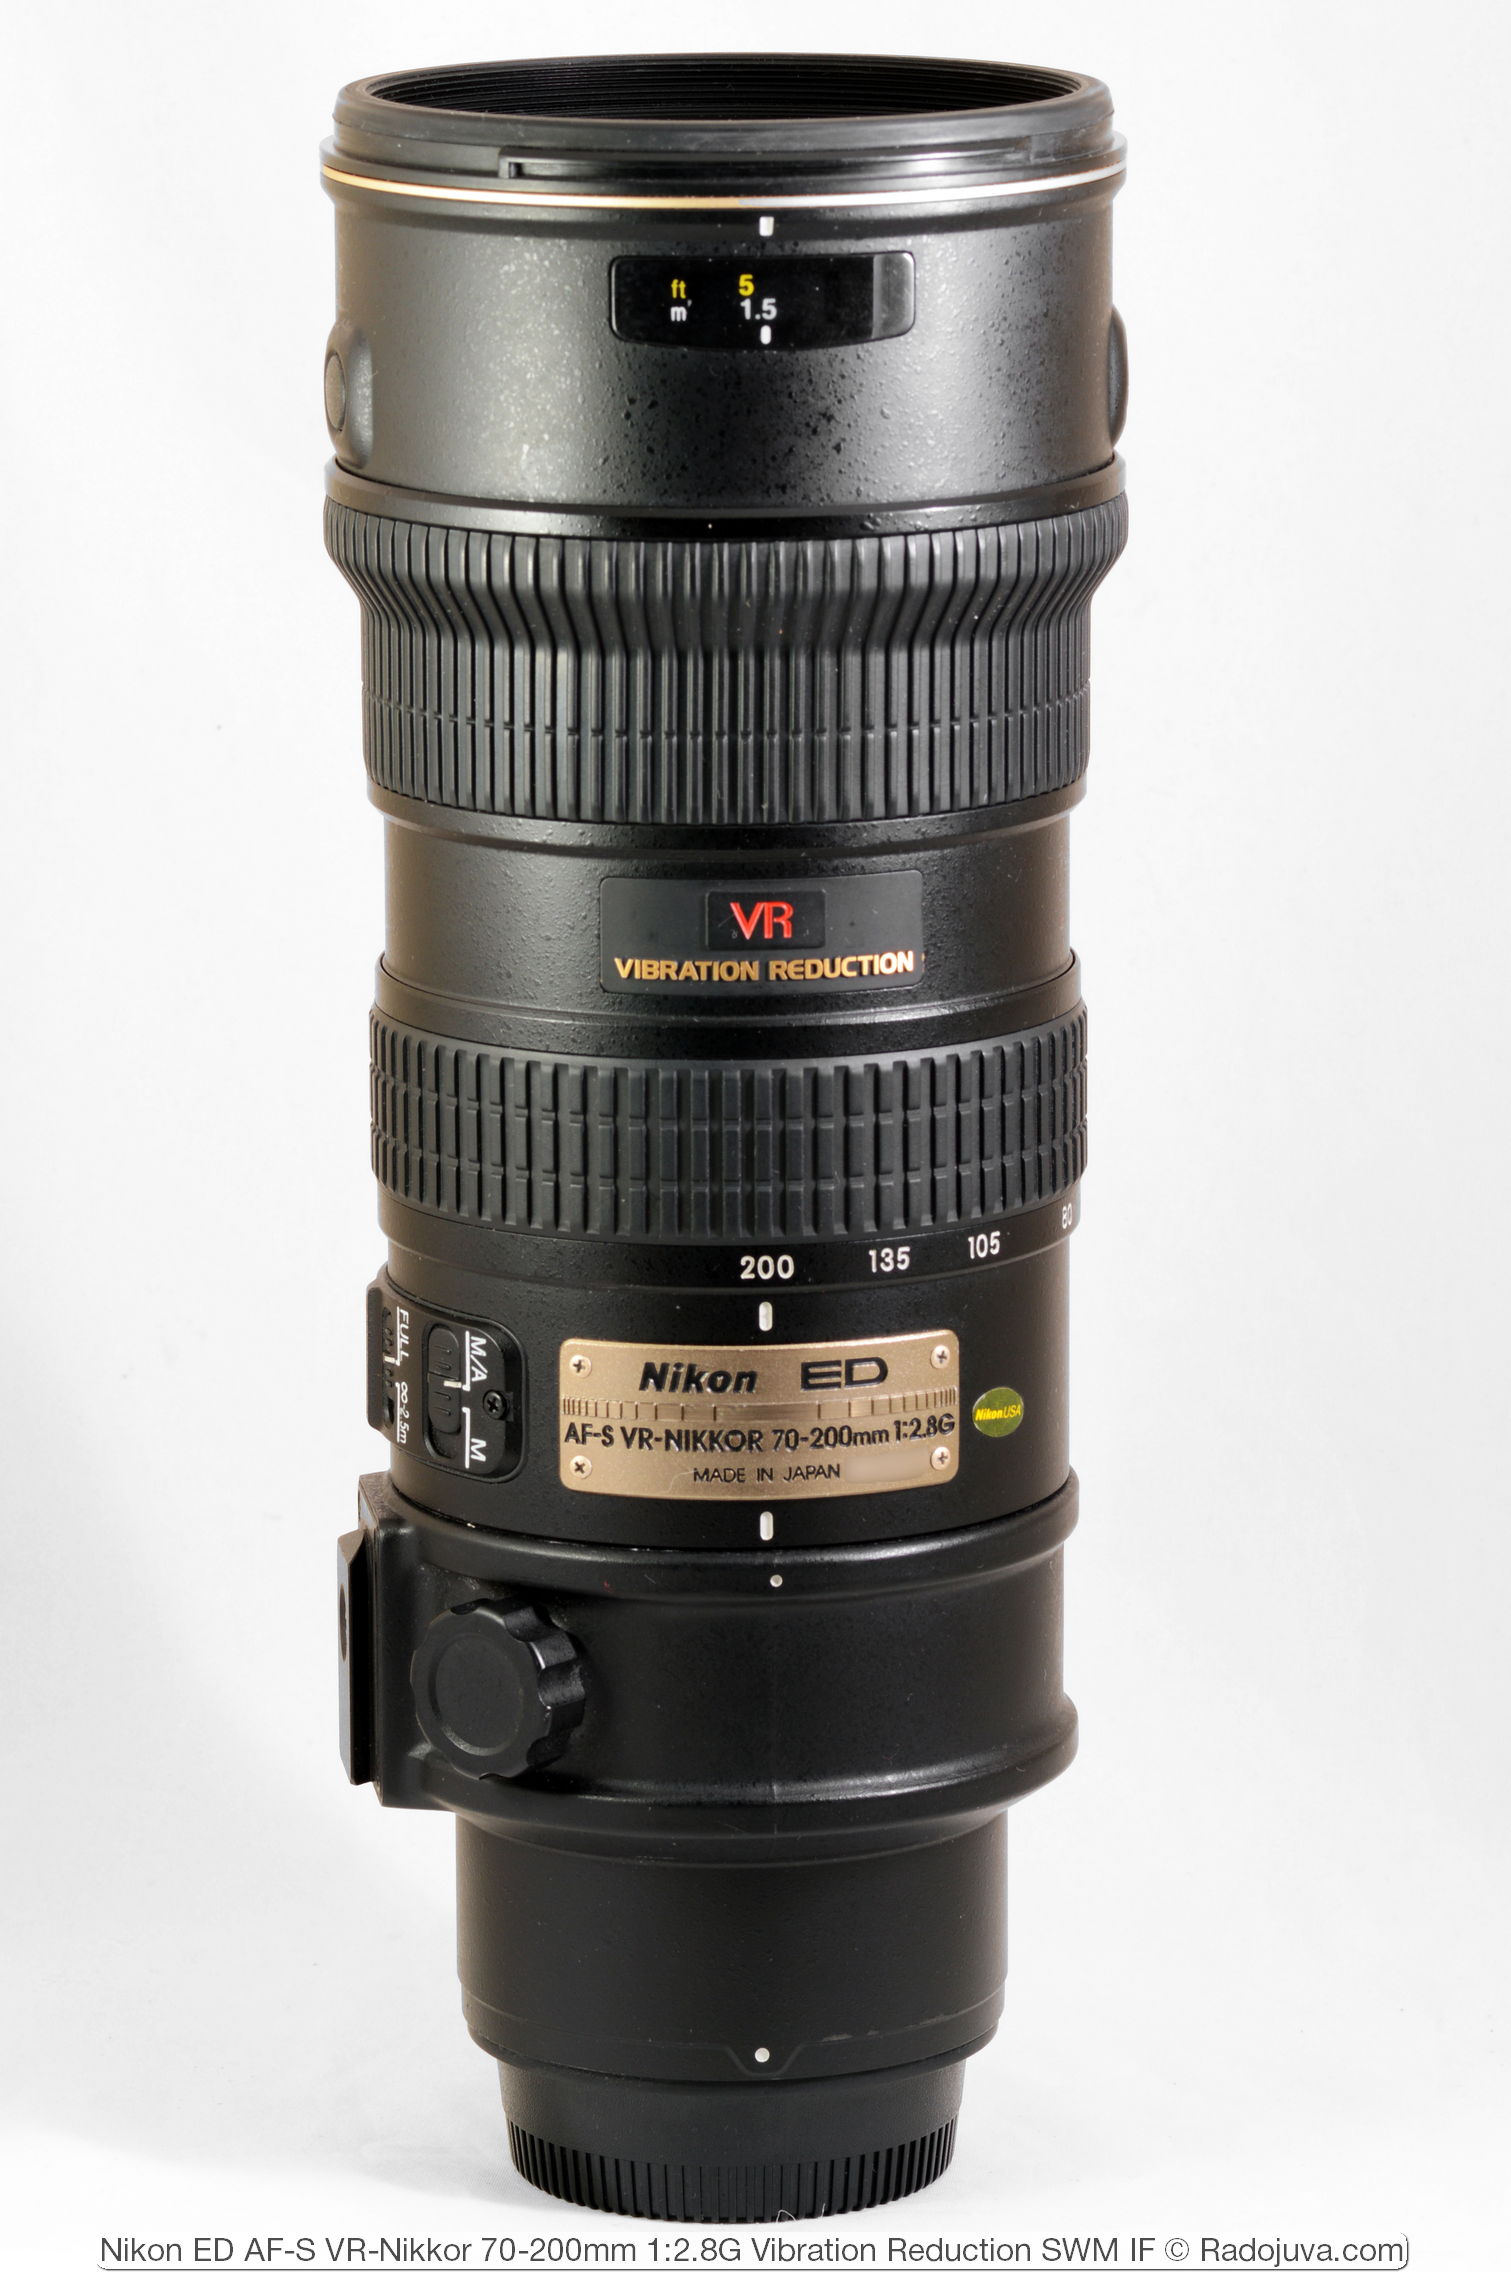 Monopol Uenighed blast Review of Nikon ED AF-S VR-Nikkor 70-200mm 1: 2.8G (VR1) | Radozhiva